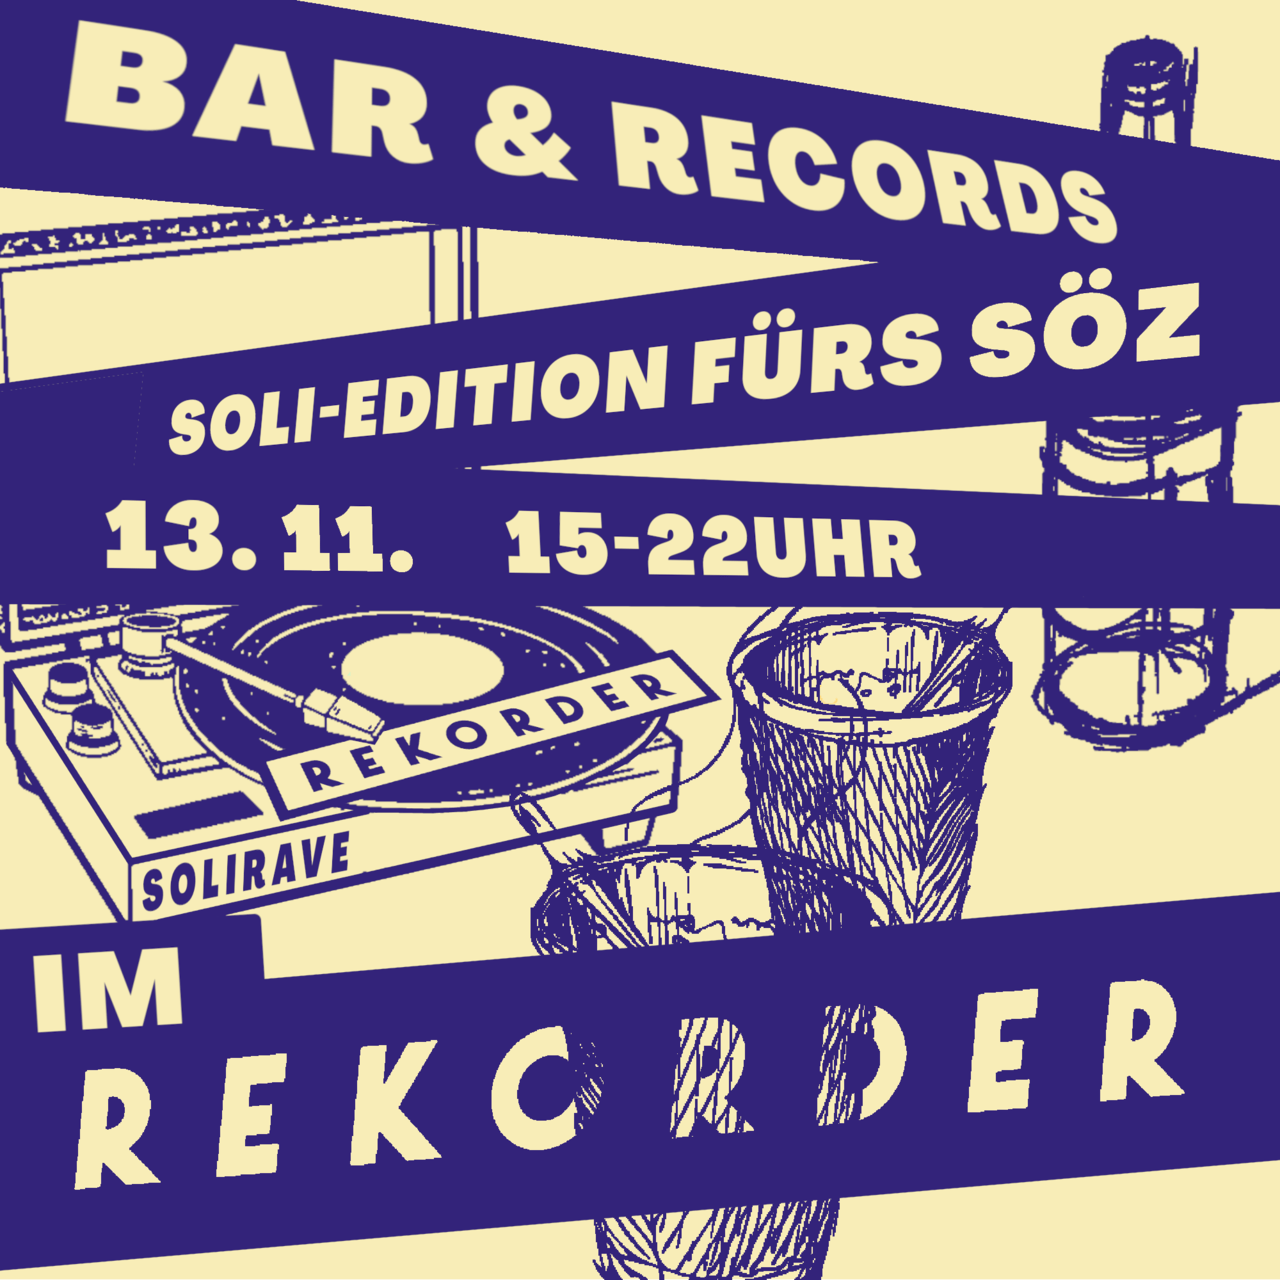 Bar & Records - Soli Edition fürs SÖZ!